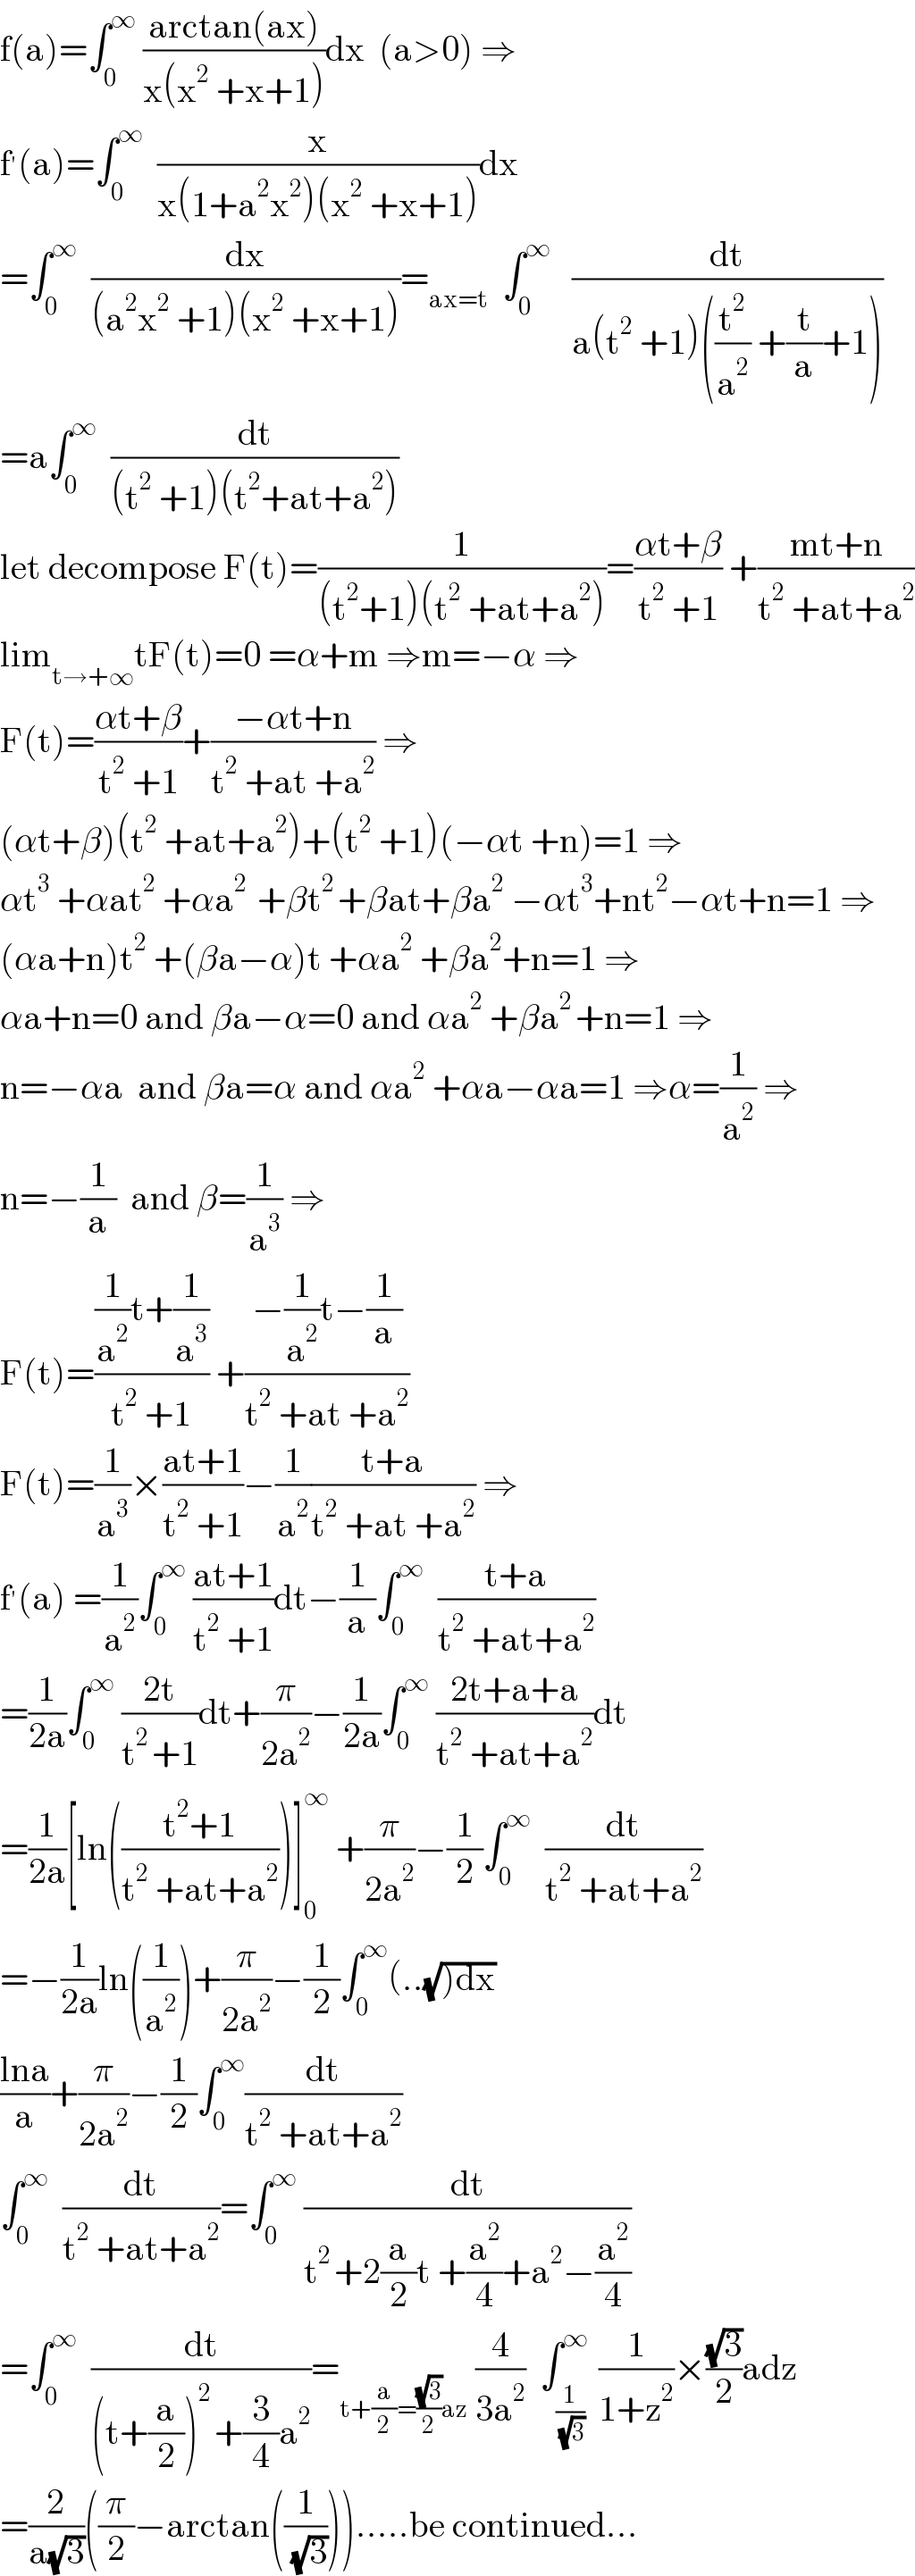 f(a)=∫_0 ^∞  ((arctan(ax))/(x(x^2  +x+1)))dx  (a>0) ⇒  f^′ (a)=∫_0 ^∞   (x/(x(1+a^2 x^2 )(x^2  +x+1)))dx  =∫_0 ^∞   (dx/((a^2 x^2  +1)(x^2  +x+1)))=_(ax=t)   ∫_0 ^∞    (dt/(a(t^2  +1)((t^2 /a^2 ) +(t/a)+1)))  =a∫_0 ^∞   (dt/((t^2  +1)(t^2 +at+a^2 )))  let decompose F(t)=(1/((t^2 +1)(t^2  +at+a^2 )))=((αt+β)/(t^2  +1)) +((mt+n)/(t^2  +at+a^2 ))  lim_(t→+∞) tF(t)=0 =α+m ⇒m=−α ⇒  F(t)=((αt+β)/(t^2  +1))+((−αt+n)/(t^2  +at +a^2 )) ⇒  (αt+β)(t^2  +at+a^2 )+(t^2  +1)(−αt +n)=1 ⇒  αt^3  +αat^2  +αa^(2 )  +βt^(2 ) +βat+βa^2  −αt^3 +nt^2 −αt+n=1 ⇒  (αa+n)t^2  +(βa−α)t +αa^2  +βa^2 +n=1 ⇒  αa+n=0 and βa−α=0 and αa^2  +βa^(2 ) +n=1 ⇒  n=−αa  and βa=α and αa^2  +αa−αa=1 ⇒α=(1/a^2 ) ⇒  n=−(1/a)  and β=(1/a^3 ) ⇒  F(t)=(((1/a^2 )t+(1/a^3 ))/(t^2  +1)) +((−(1/a^2 )t−(1/a))/(t^2  +at +a^2 ))  F(t)=(1/a^3 )×((at+1)/(t^2  +1))−(1/a^2 )((t+a)/(t^2  +at +a^2 )) ⇒  f^′ (a) =(1/a^2 )∫_0 ^∞  ((at+1)/(t^2  +1))dt−(1/a)∫_0 ^∞   ((t+a)/(t^2  +at+a^2 ))  =(1/(2a))∫_0 ^∞  ((2t)/(t^(2 ) +1))dt+(π/(2a^2 ))−(1/(2a))∫_0 ^∞  ((2t+a+a)/(t^2  +at+a^2 ))dt  =(1/(2a))[ln(((t^2 +1)/(t^2  +at+a^2 )))]_0 ^∞  +(π/(2a^2 ))−(1/2)∫_0 ^∞   (dt/(t^2  +at+a^2 ))  =−(1/(2a))ln((1/a^2 ))+(π/(2a^2 ))−(1/2)∫_0 ^∞ (..(√()dx))  ((lna)/a)+(π/(2a^2 ))−(1/2)∫_0 ^∞ (dt/(t^2  +at+a^2 ))  ∫_0 ^∞   (dt/(t^2  +at+a^2 ))=∫_0 ^∞  (dt/(t^(2 ) +2(a/2)t +(a^2 /4)+a^2 −(a^2 /4)))  =∫_0 ^∞   (dt/((t+(a/2))^(2 ) +(3/4)a^2 ))=_(t+(a/2)=((√3)/2)az)  (4/(3a^2 ))  ∫_(1/( (√3))) ^∞  (1/(1+z^2 ))×((√3)/2)adz  =(2/(a(√3)))((π/2)−arctan((1/( (√3))))).....be continued...  